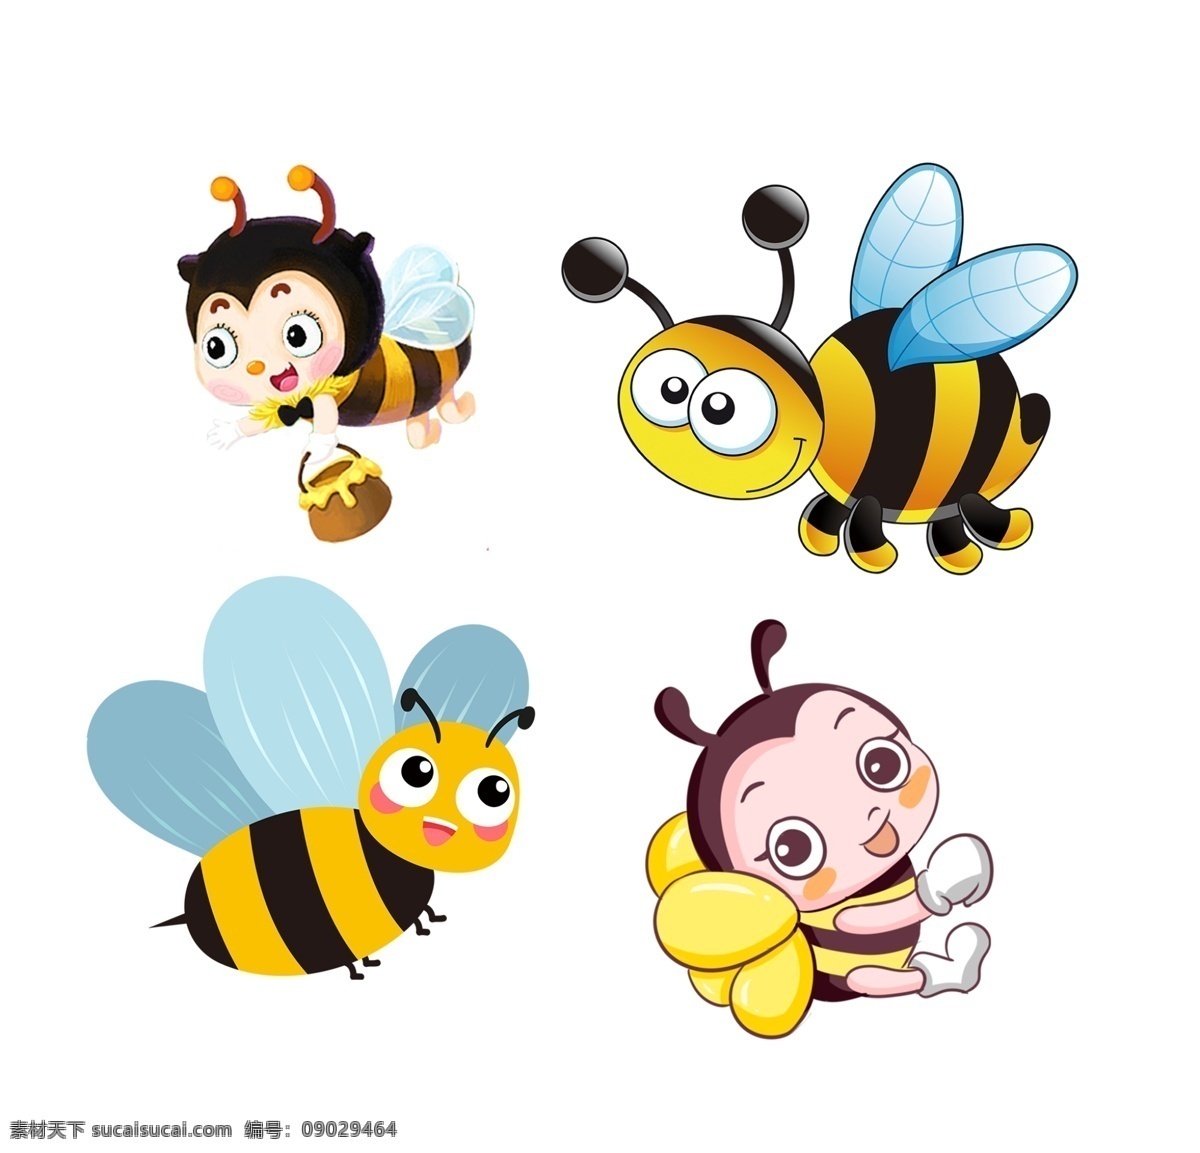 矢量蜜蜂 卡通蜜蜂 蜜蜂插画 手绘蜜蜂 蜜蜂图标 蜜蜂图形 蜜蜂元素 蜜蜂素材 蜂蜜元素 蜂蜜素材 蜂蜜背景 蜜蜂用品 蜂蜜用品